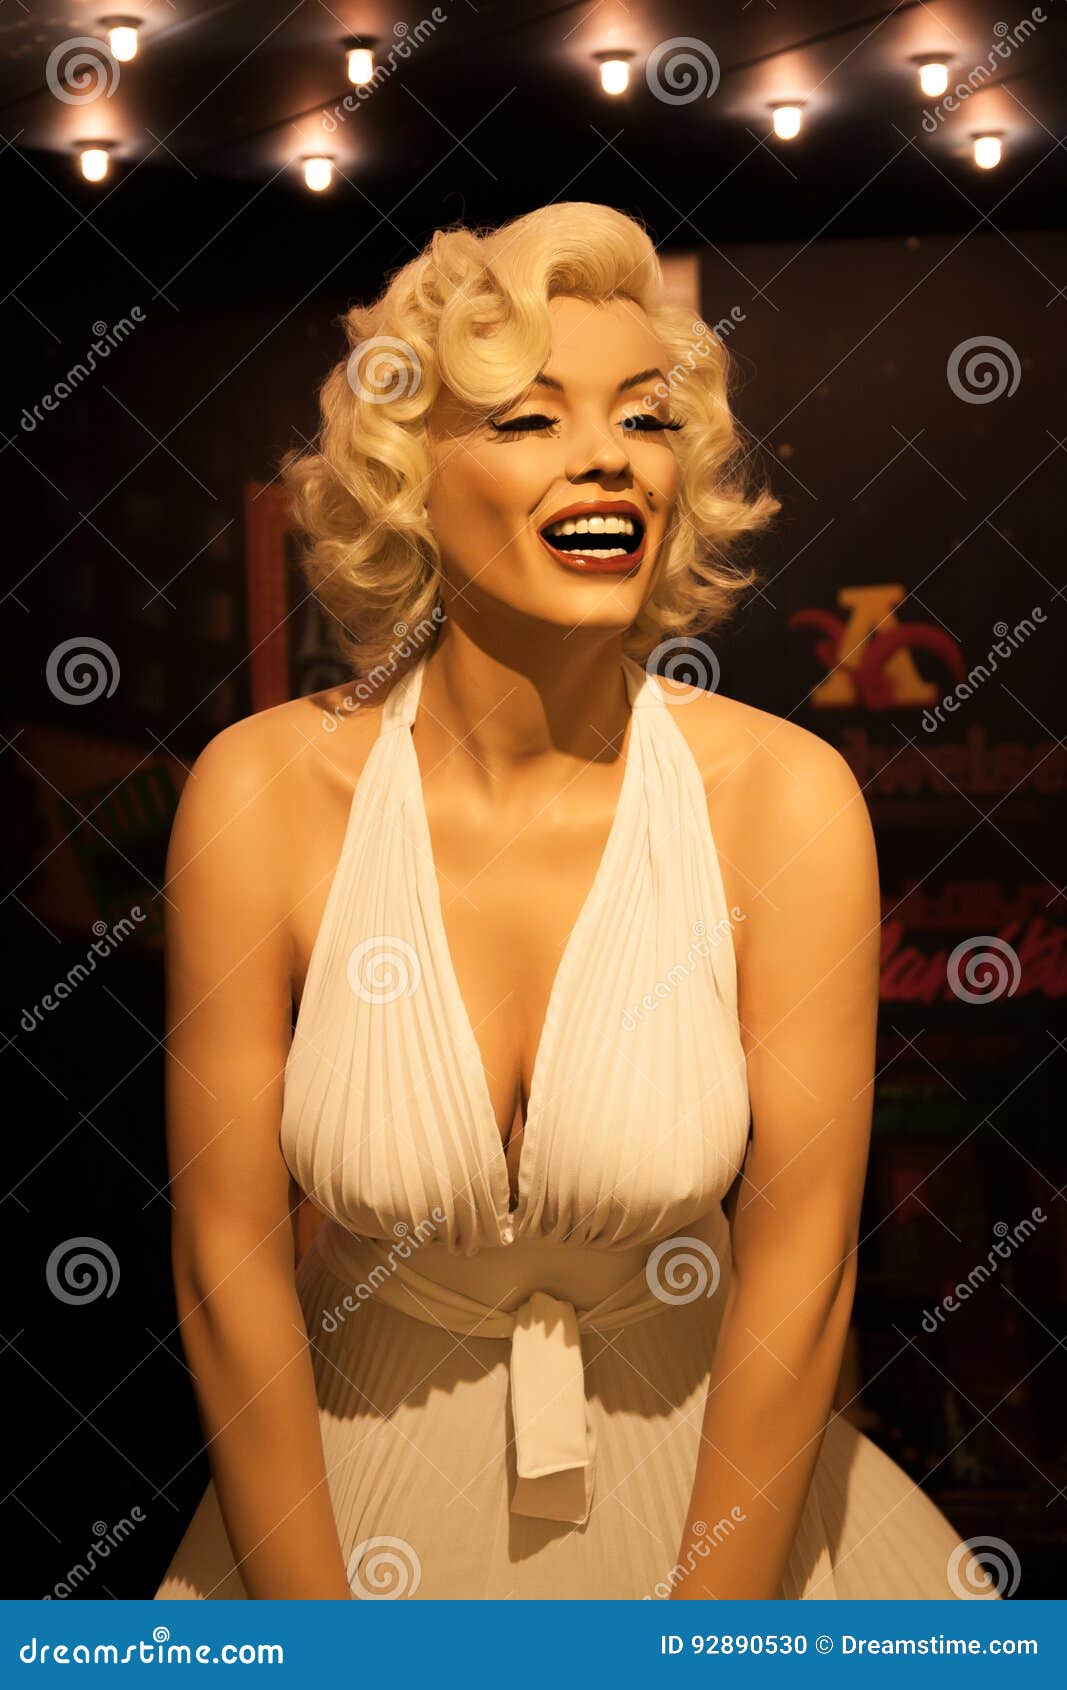 zelfstandig naamwoord praktijk Slecht Marilyn Monroe-wascijfer in Mevrouw Tussauds Amsterdam Redactionele  Afbeelding - Image of nederland, cijfer: 92890530